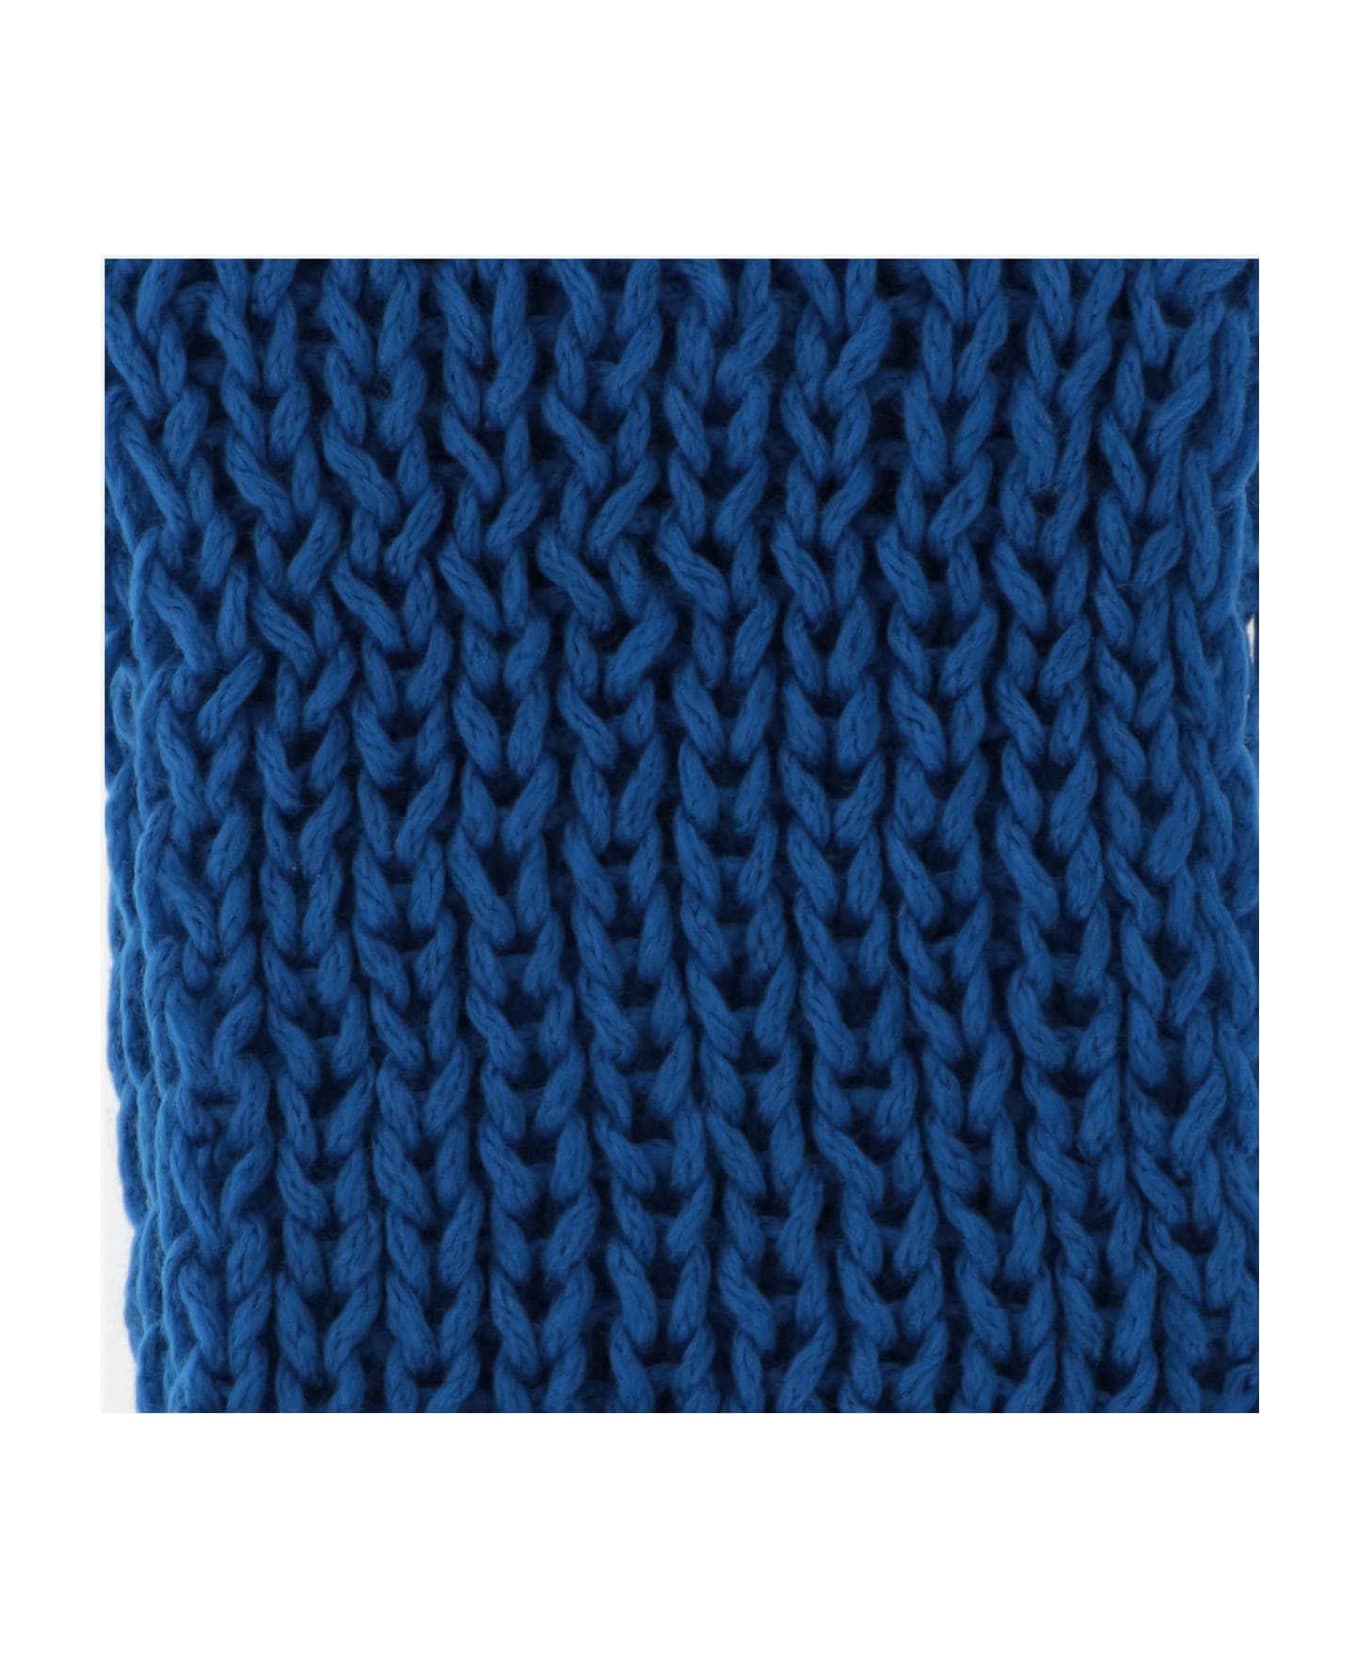 Evyinit Merino Wool Blend Scarf - Blue